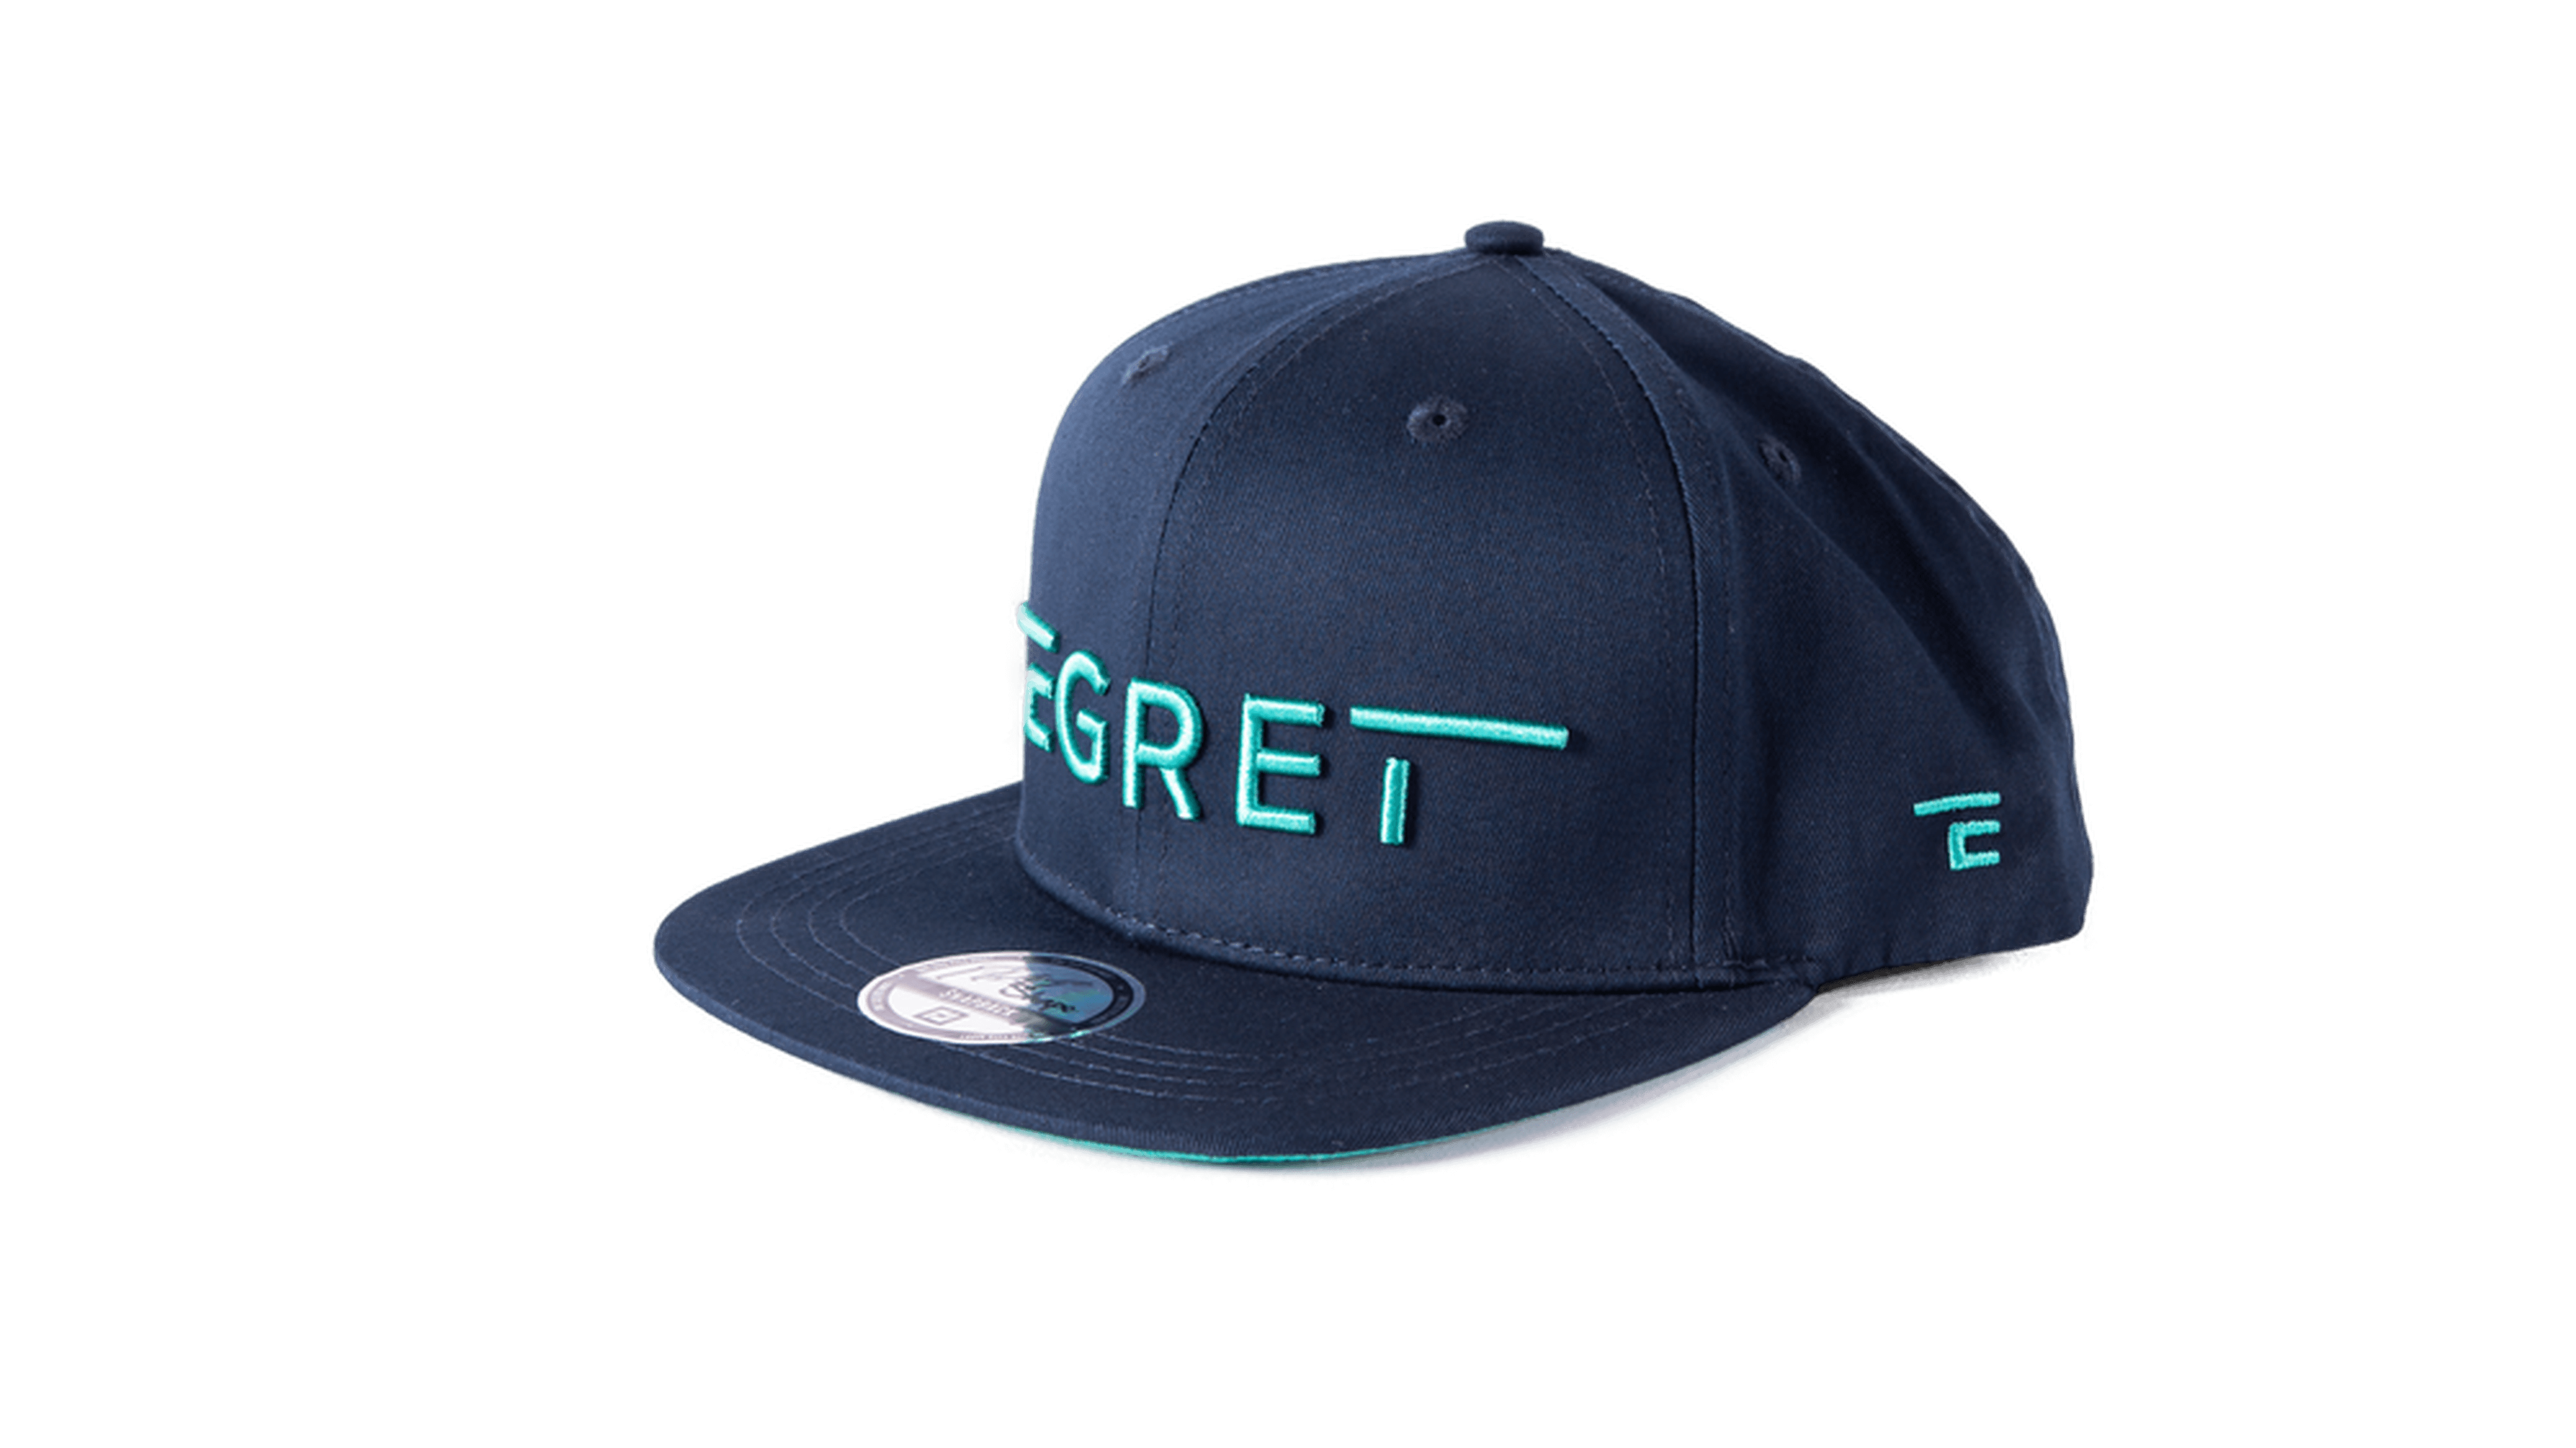 Egret Flatpeak Cap